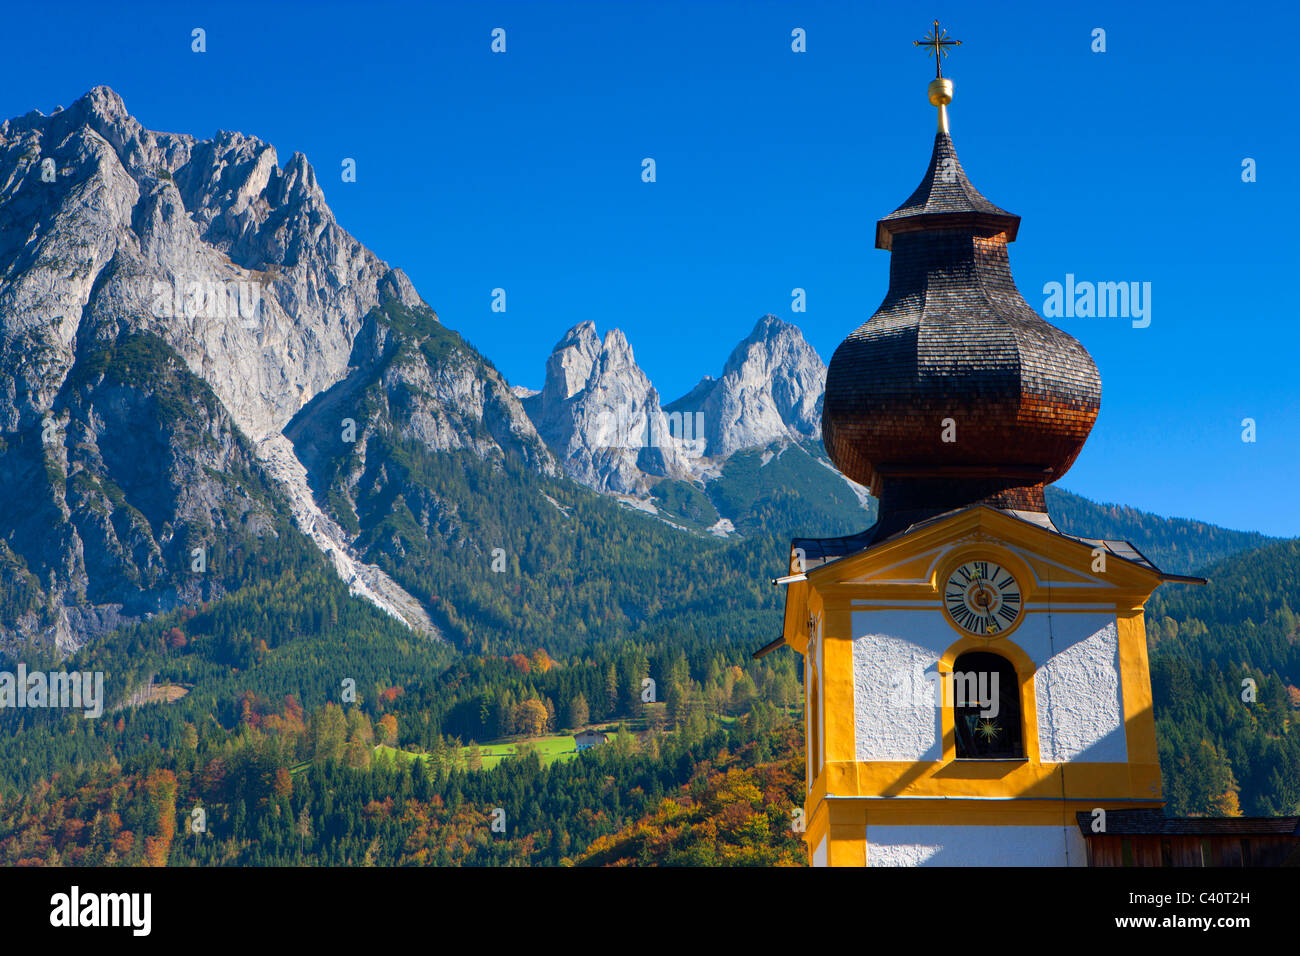 Werfen, Austria, Europe, Salzburg, village, church, steeple, mountains, wood, forest, autumn Stock Photo